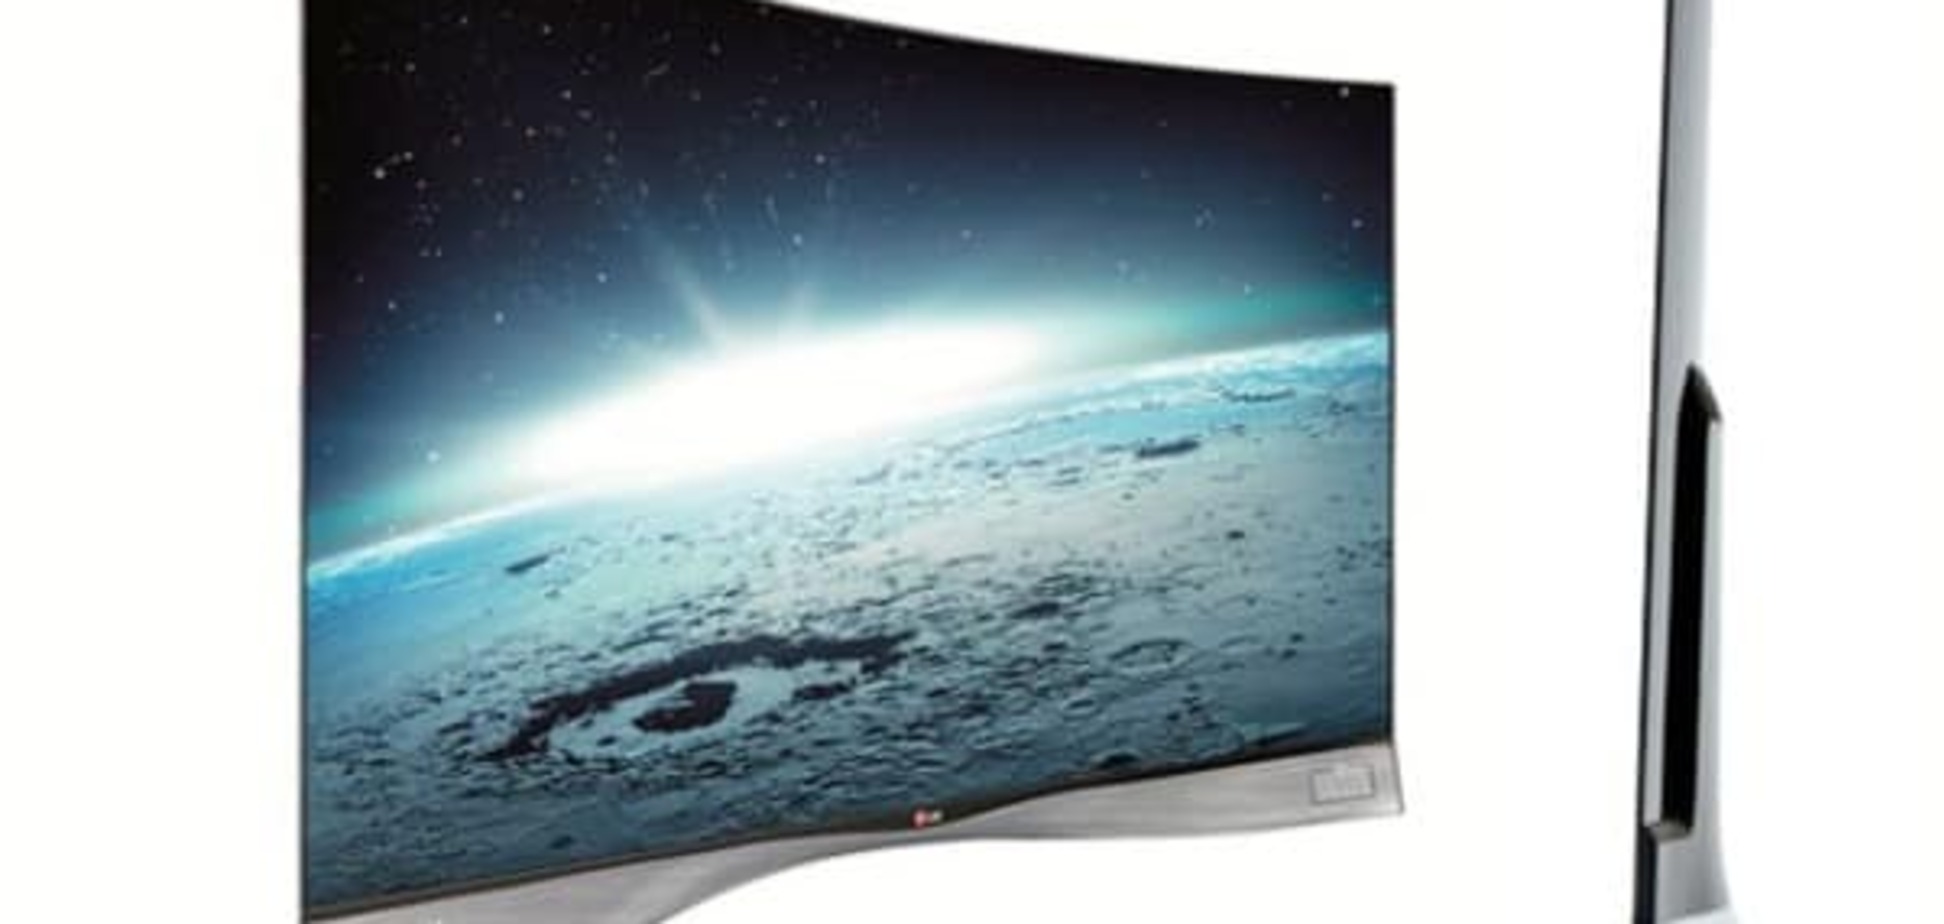 Особенности новых OLED-телевизоров LG 2016 года